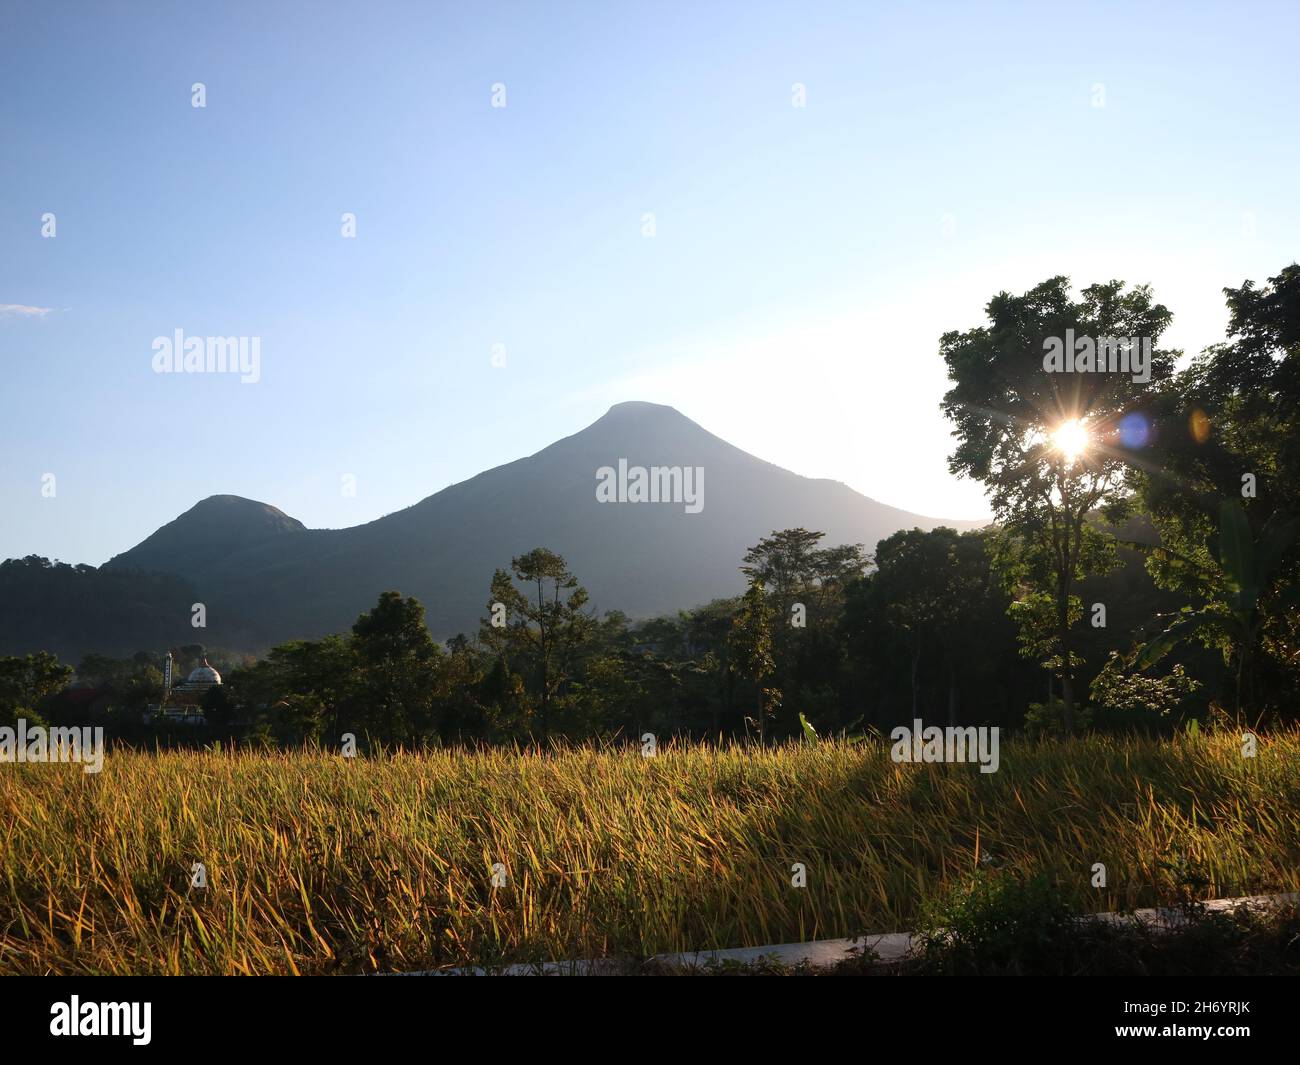 MOJOKERTO, INDONESIEN - 06. Juni 2019: Wunderschöne Aussicht auf Reisfelder, Bäume und Berge mit weißen Wolken am blauen Himmel. Naturhintergrund Stockfoto